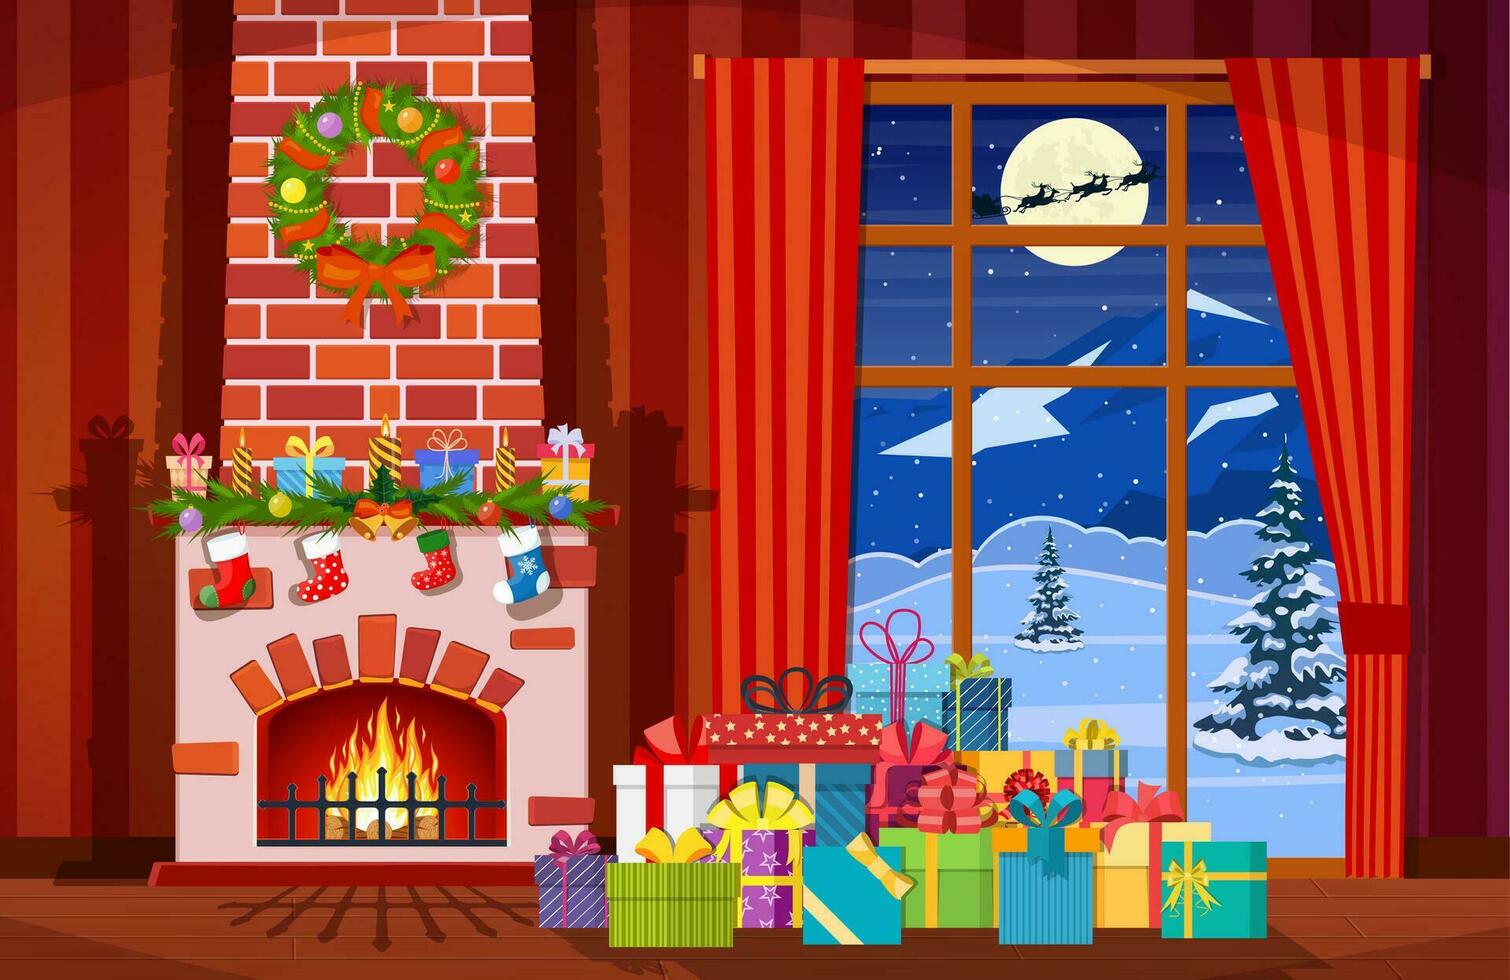 Navidad interior de habitación con ventana, regalos y decorado chimenea. contento nuevo año decoración. alegre Navidad día festivo. nuevo año y Navidad celebracion. vector ilustración plano estilo